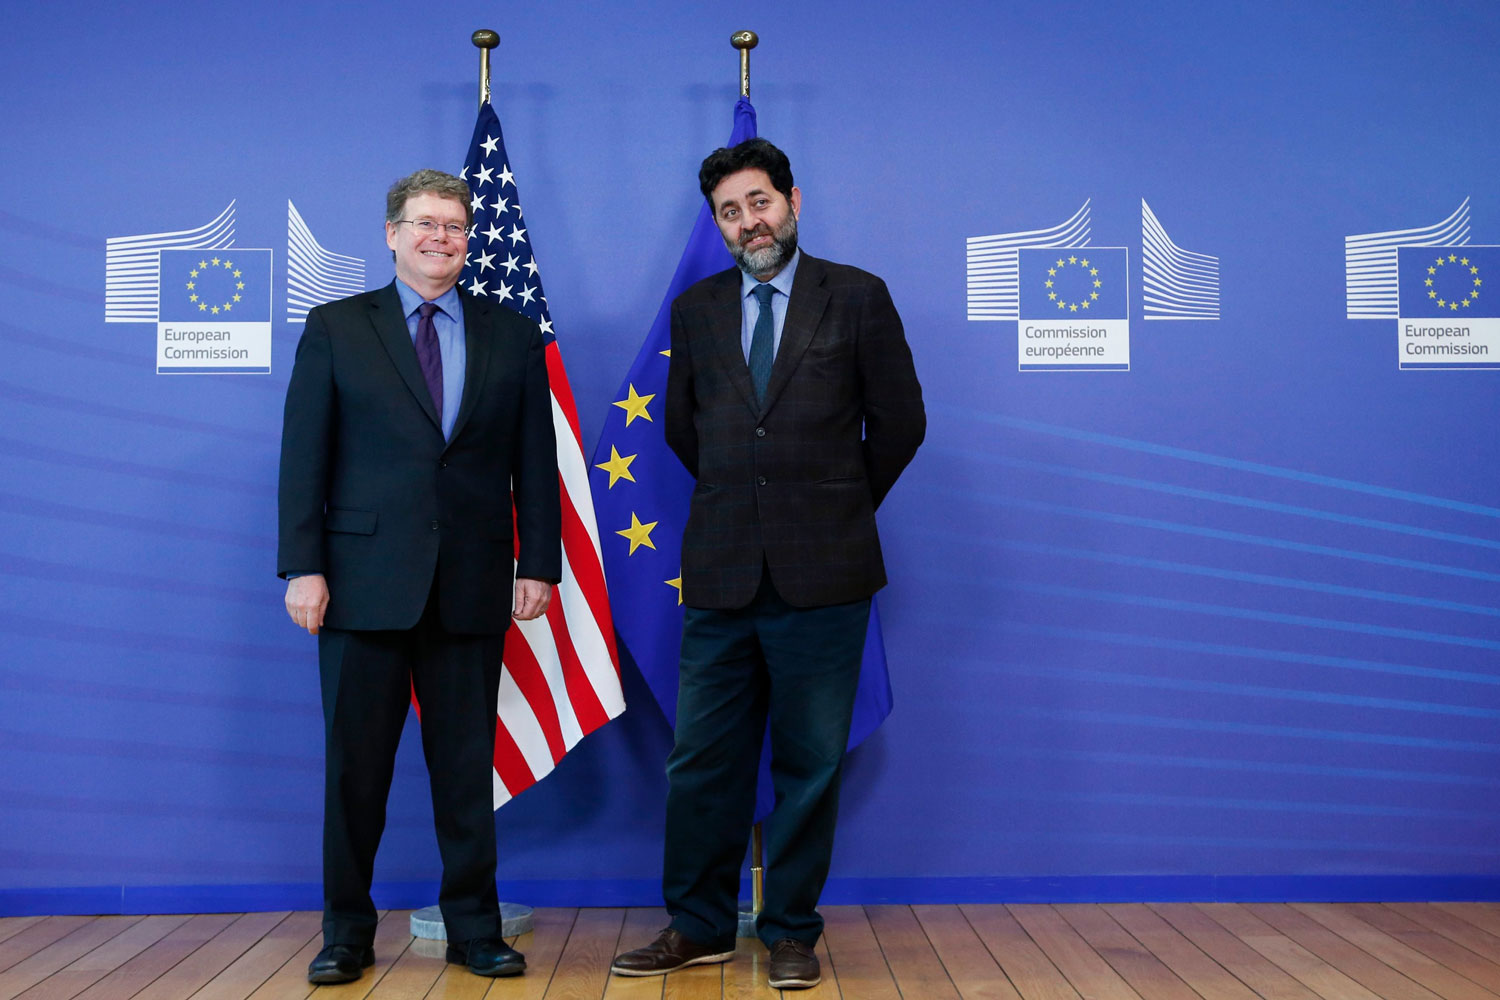 Estados Unidos y Europa vuelven a negociar acuerdo comercial tras el escándalo de espionaje